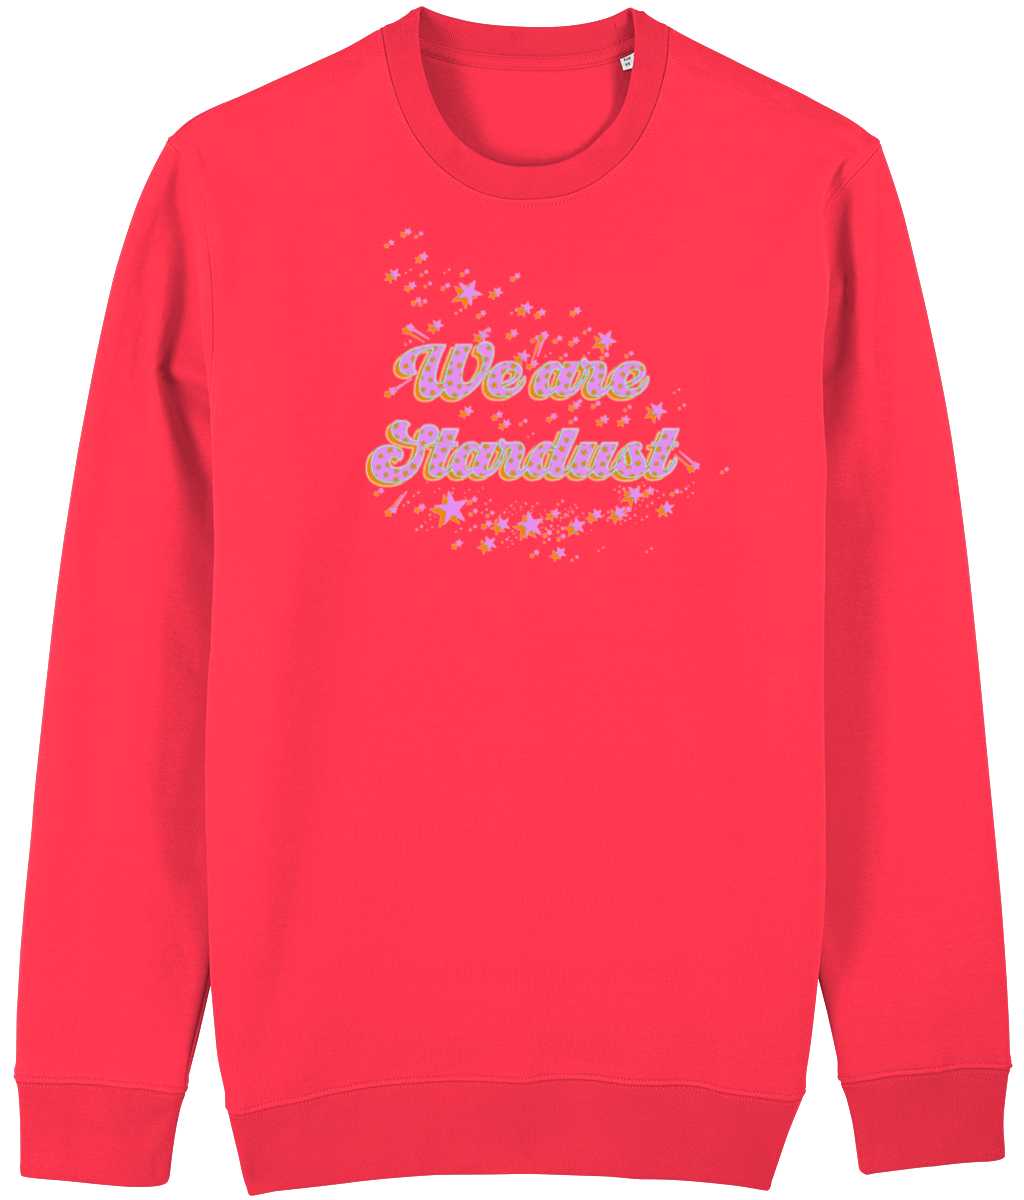 We are Stardust non gender sweatshirt Cherchez La Femme brand